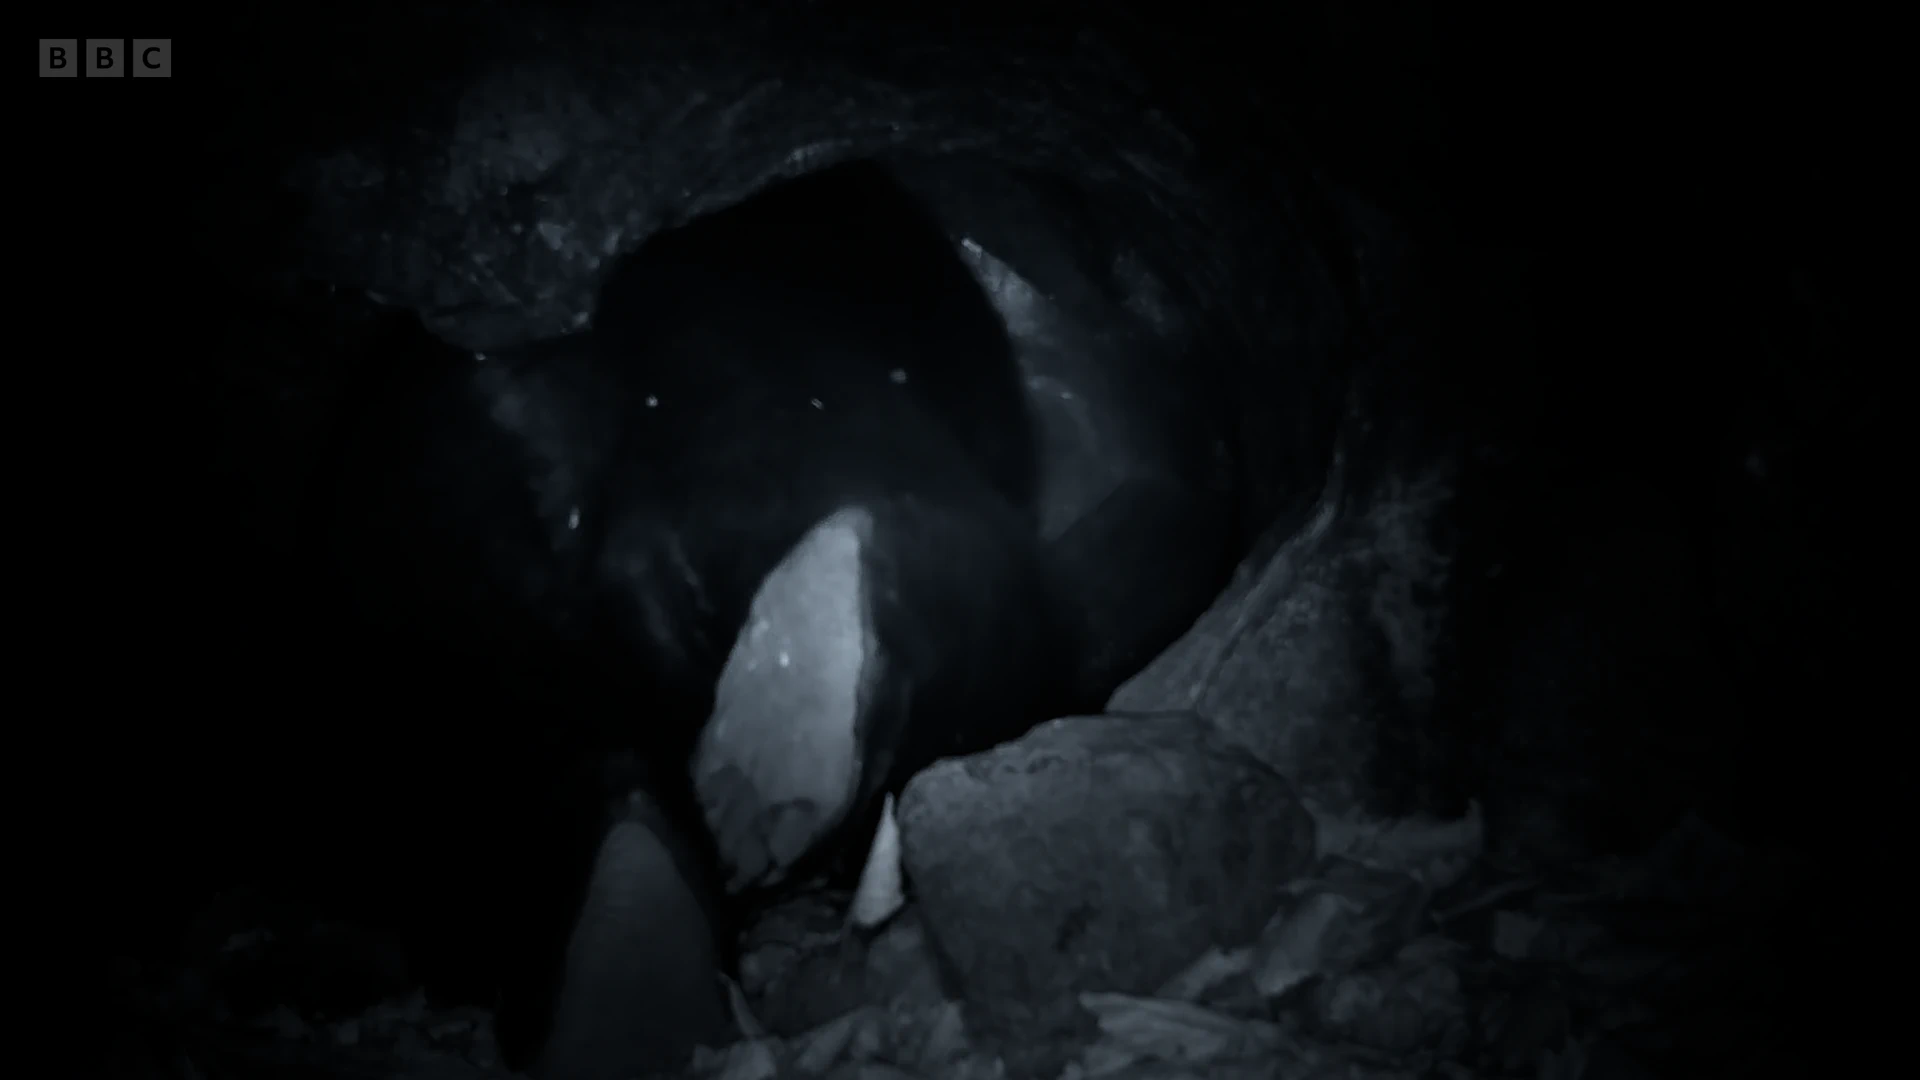 Ussuri black bear (Ursus thibetanus ussuricus) as shown in Frozen Planet II - Frozen Worlds